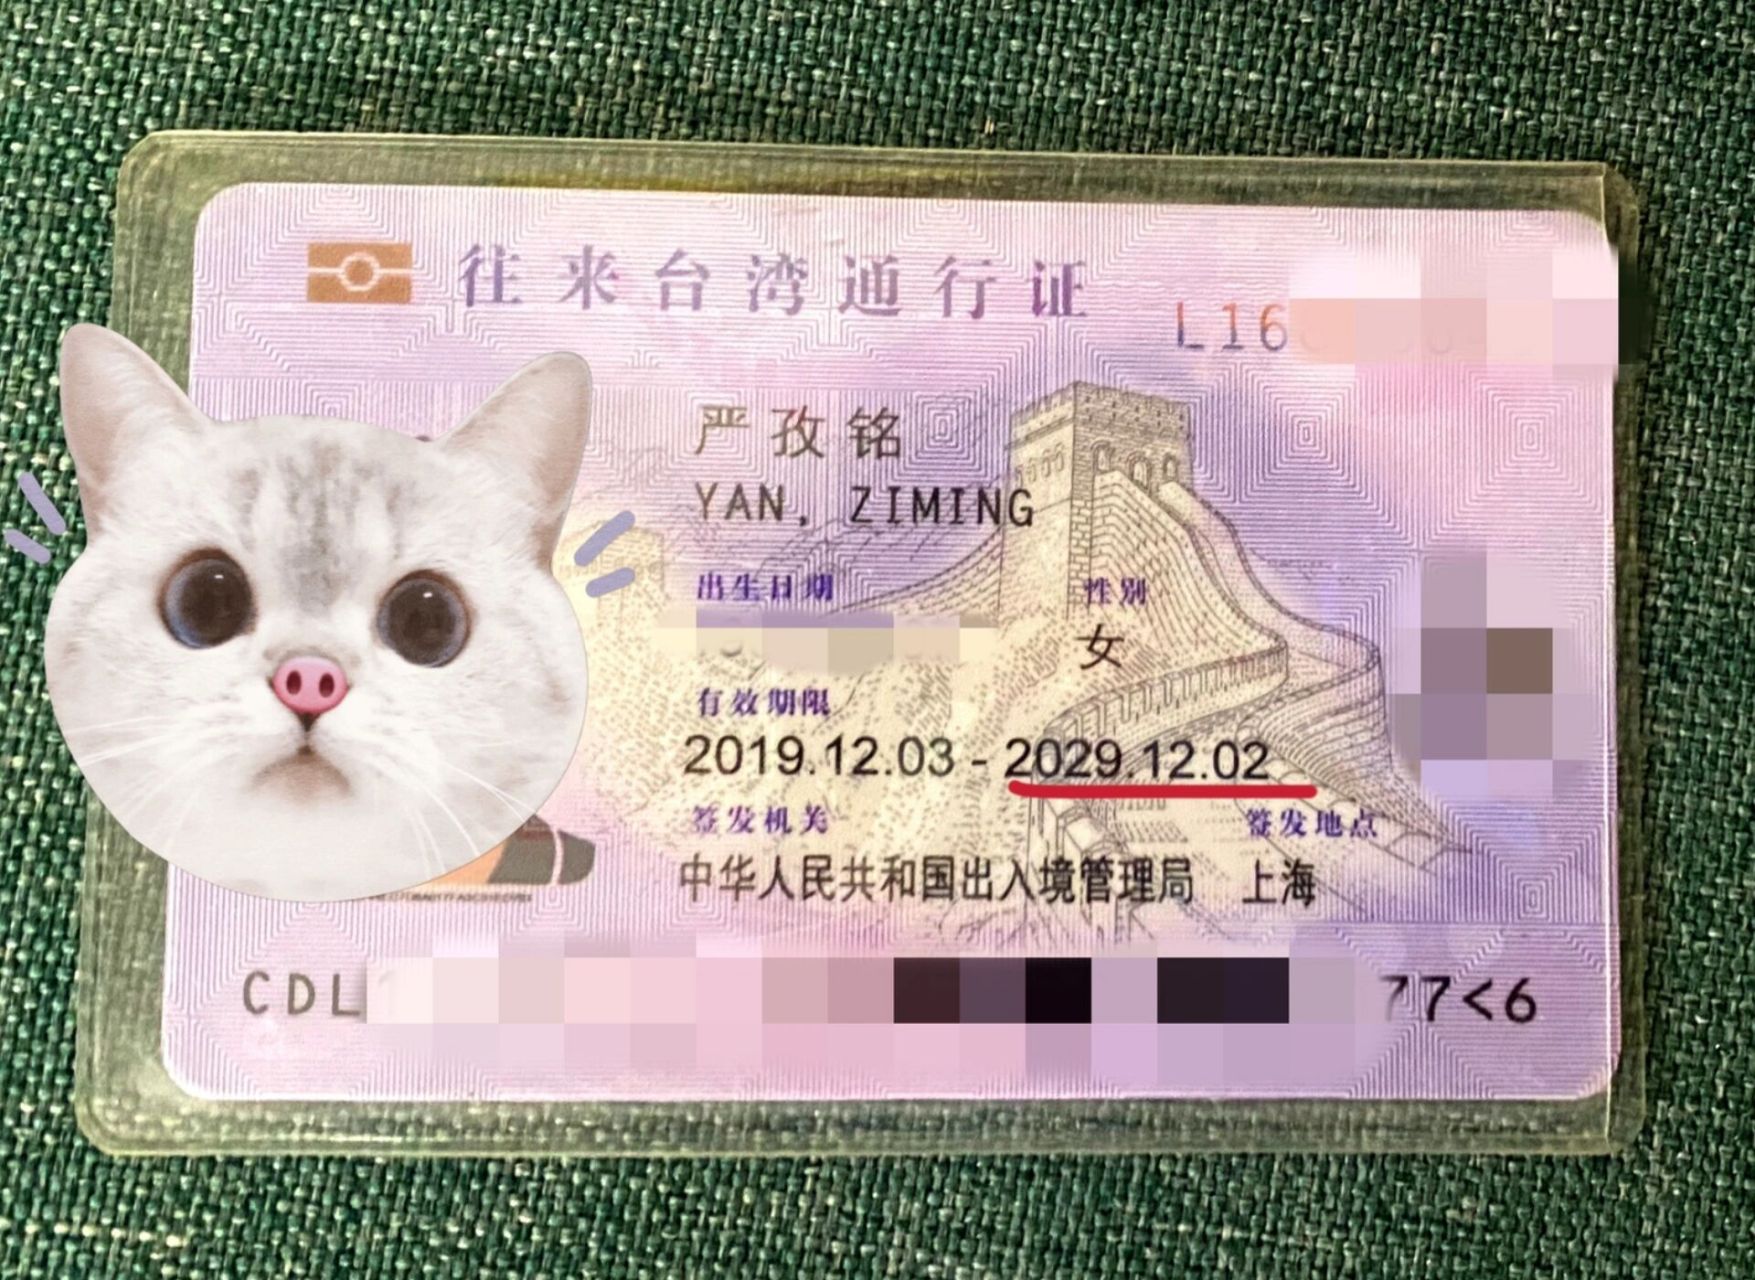 台湾通行证照片要求图片